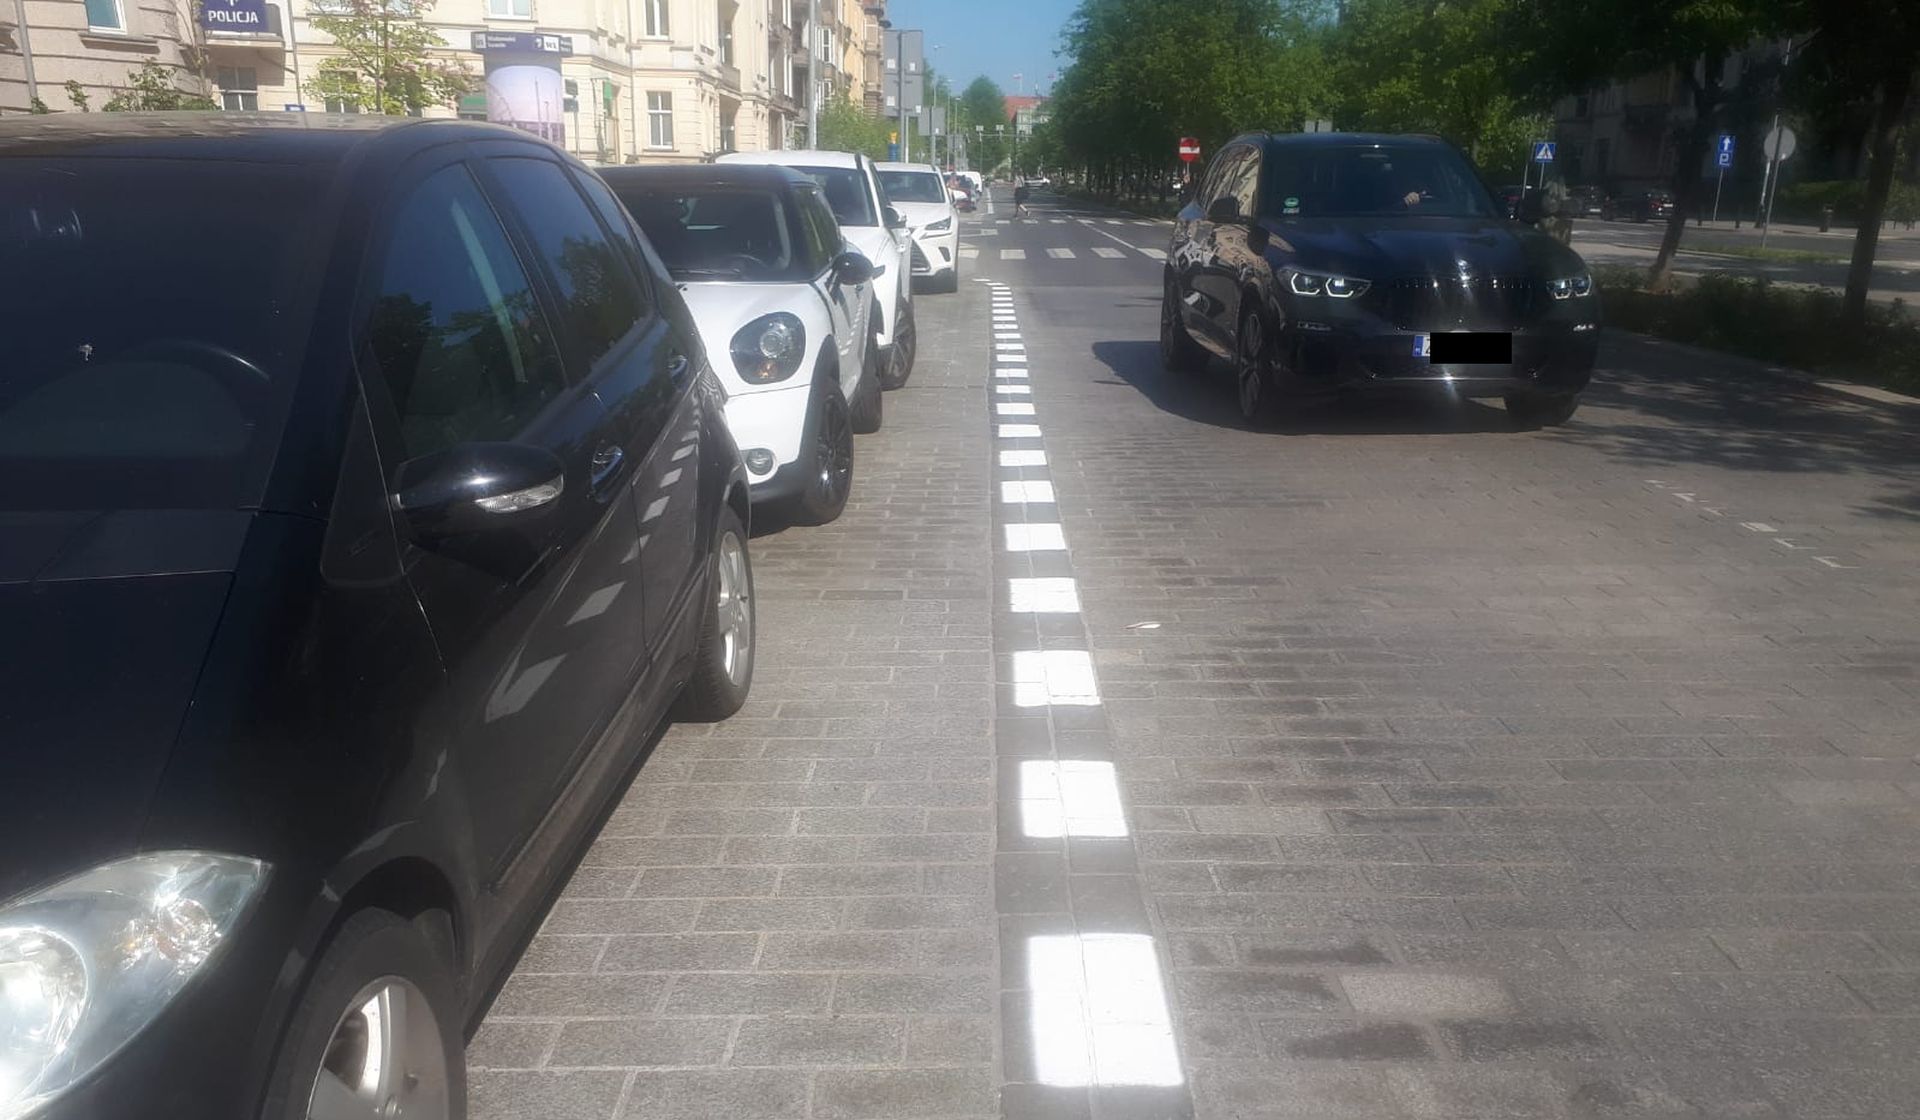 Kolejny raz drogowcy będą naprawiać nawierzchnię w alei Jana Pawła II w Szczecinie. Zmieni się organizacja ruchu, jest tez ograniczenie prędkości.